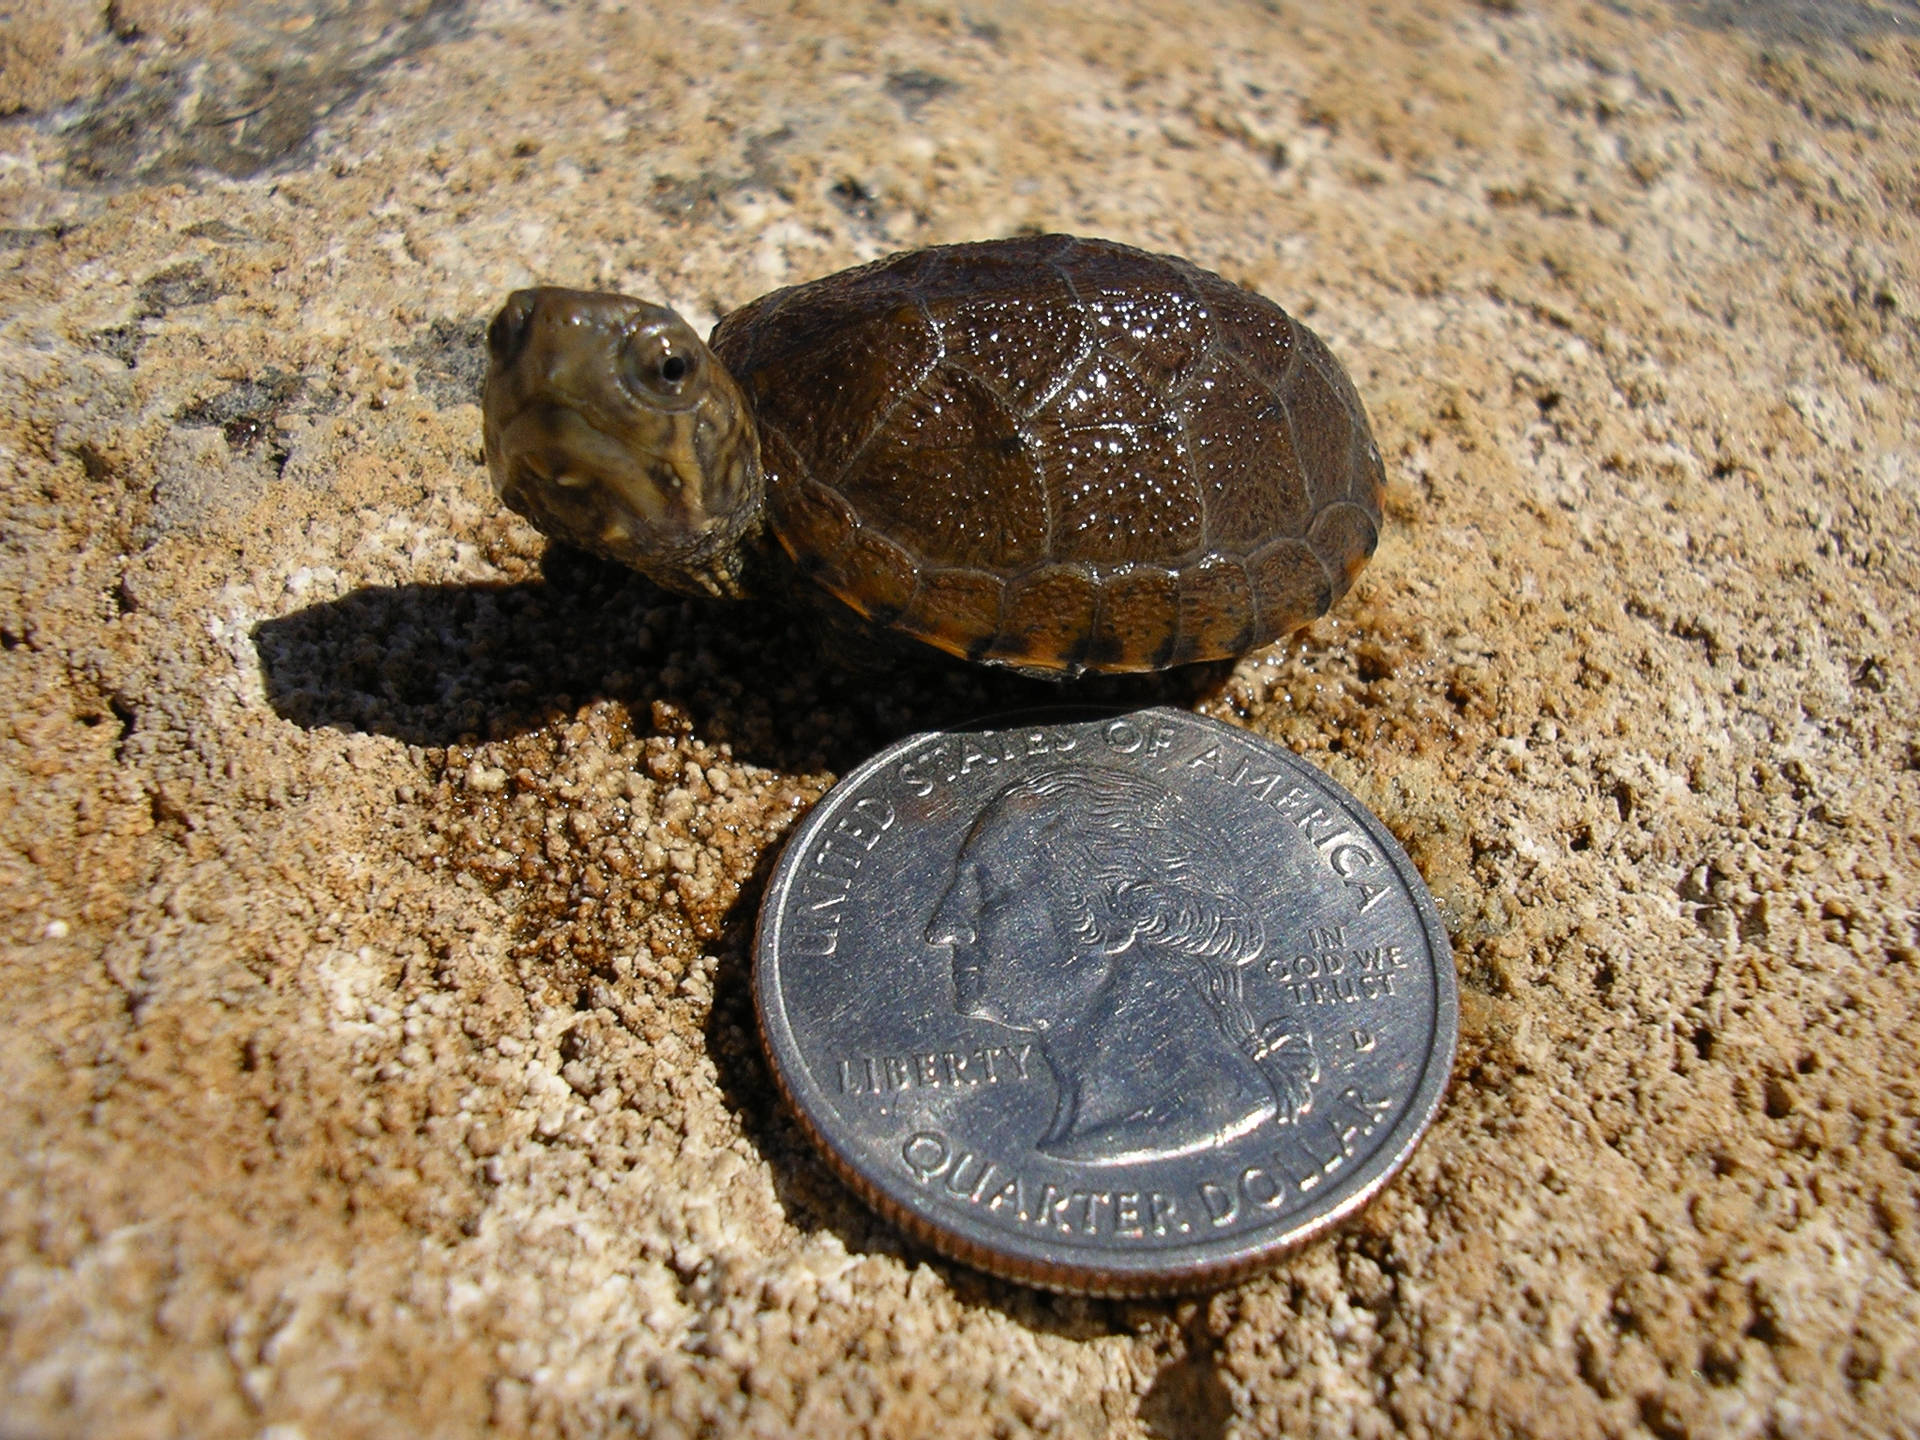 Mudsköldpaddajämfört Med En Mynt. Wallpaper